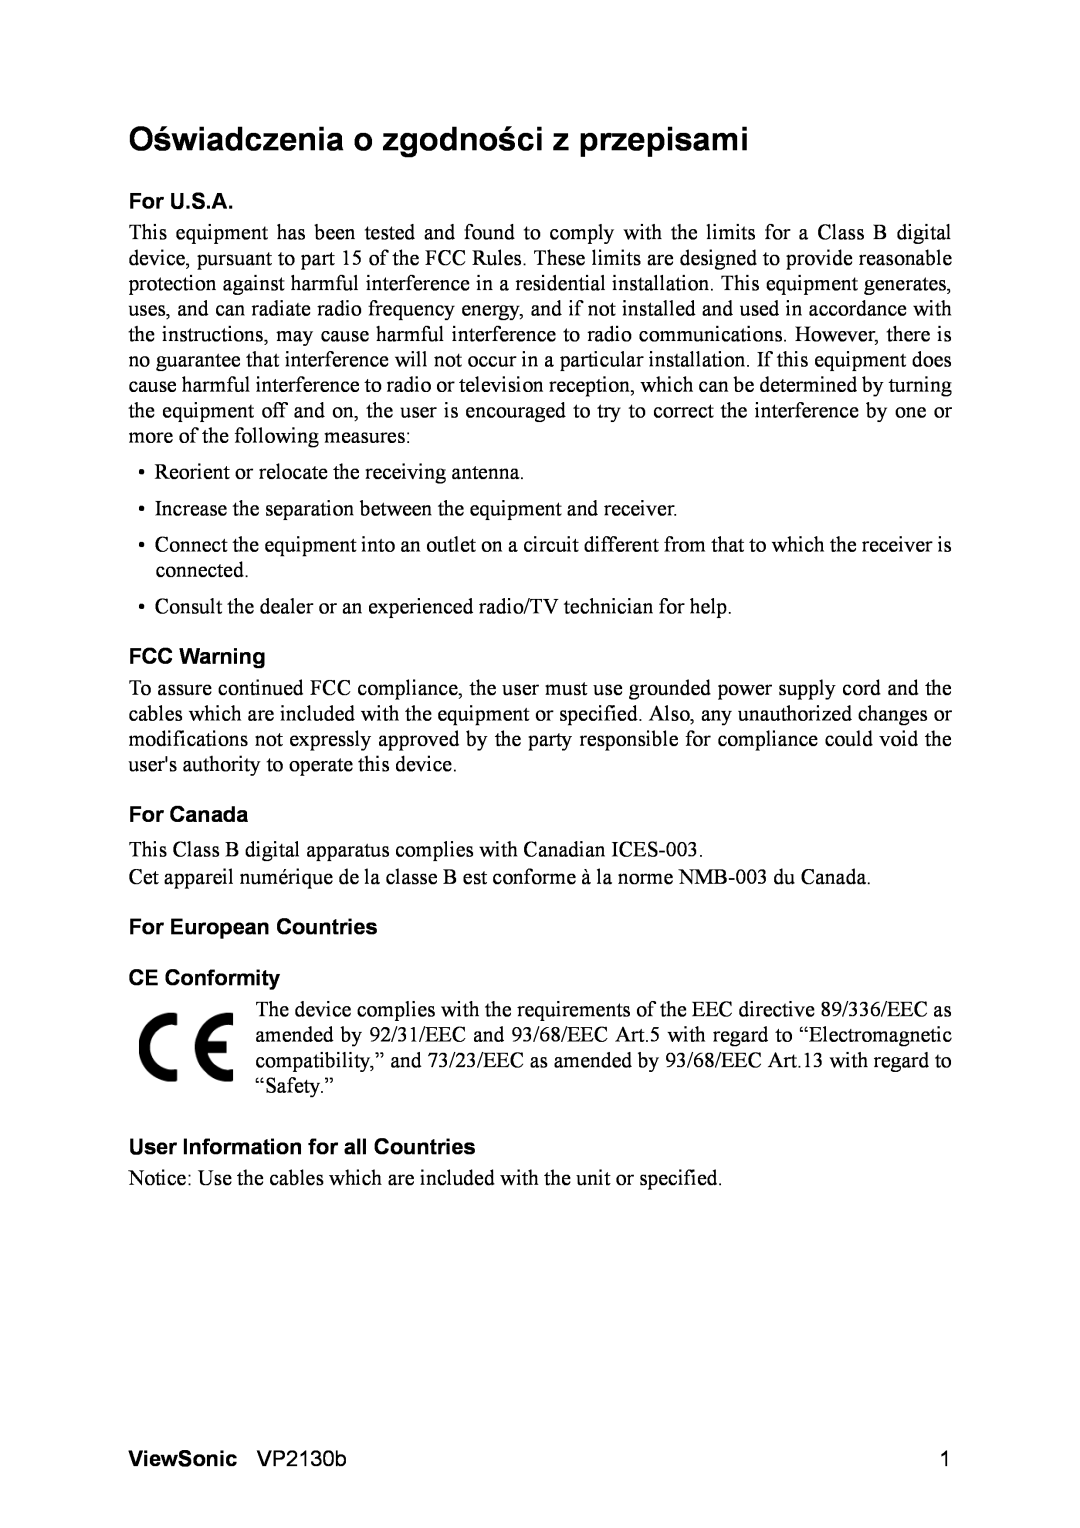 ViewSonic VS10773 manual Oświadczenia o zgodności z przepisami, For U.S.A, FCC Warning, For Canada, ViewSonic VP2130b 